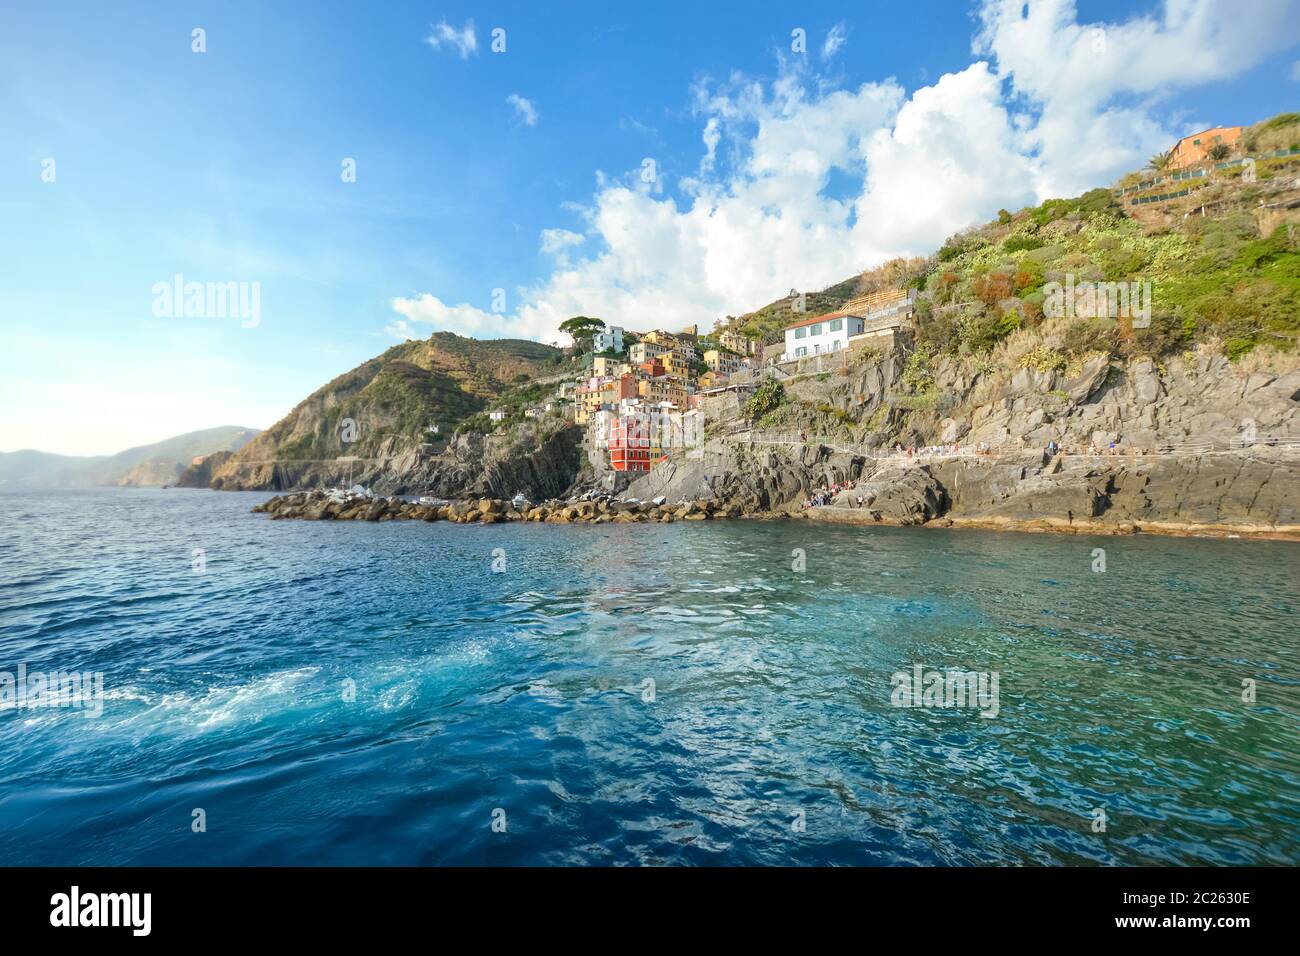 Die felsige Küste von Riomaggiore, Italien, Teil der fünf Fischerdörfer, die die Cinque Terre an der ligurischen Küste Italiens bilden. Stockfoto